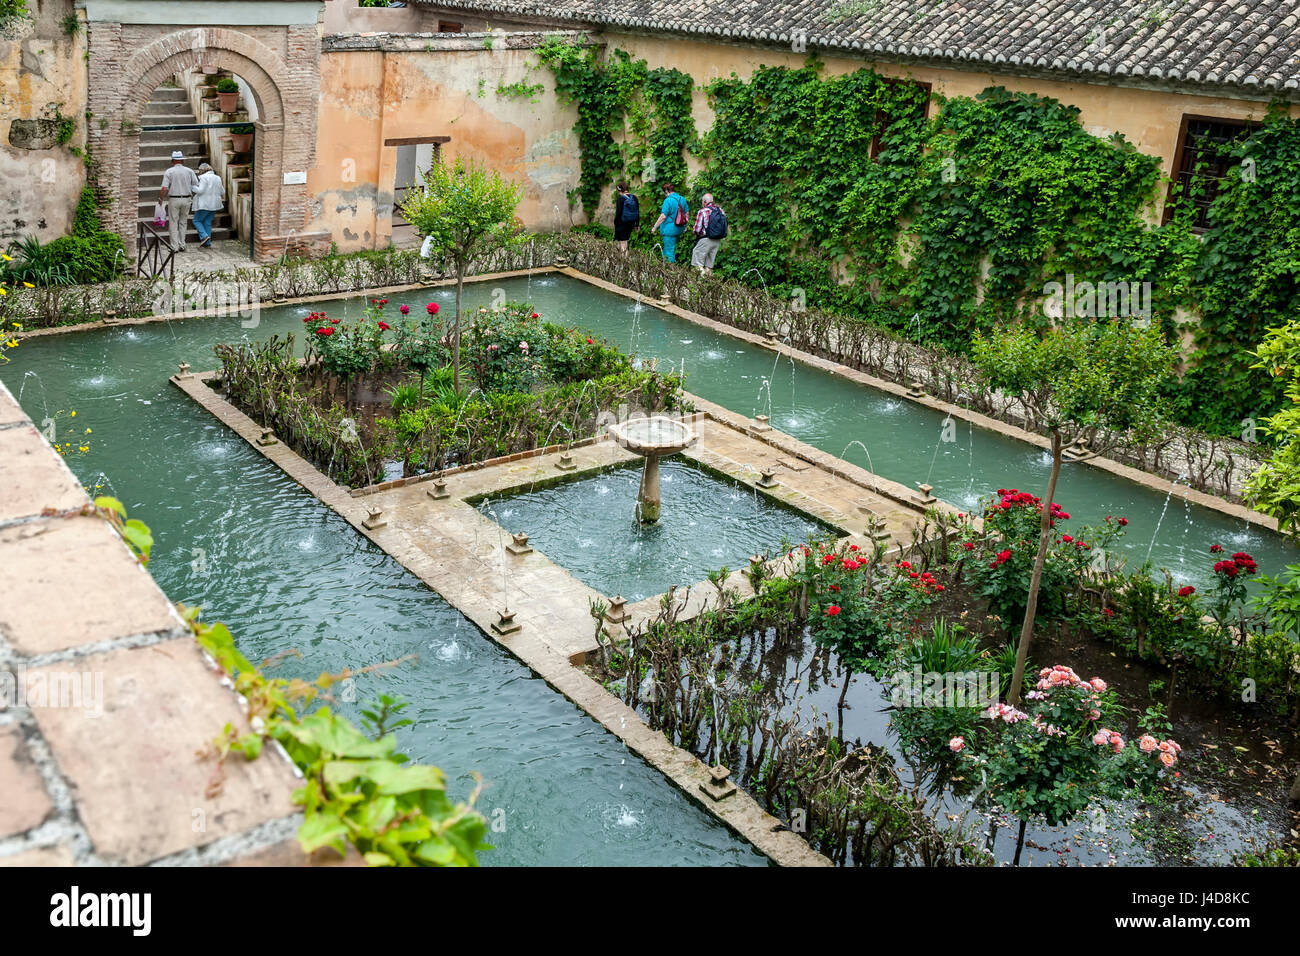 Leute, Pool und Garten, El Generalife (Sommerresidenz), der Alhambra, Granada, Spanien Stockfoto